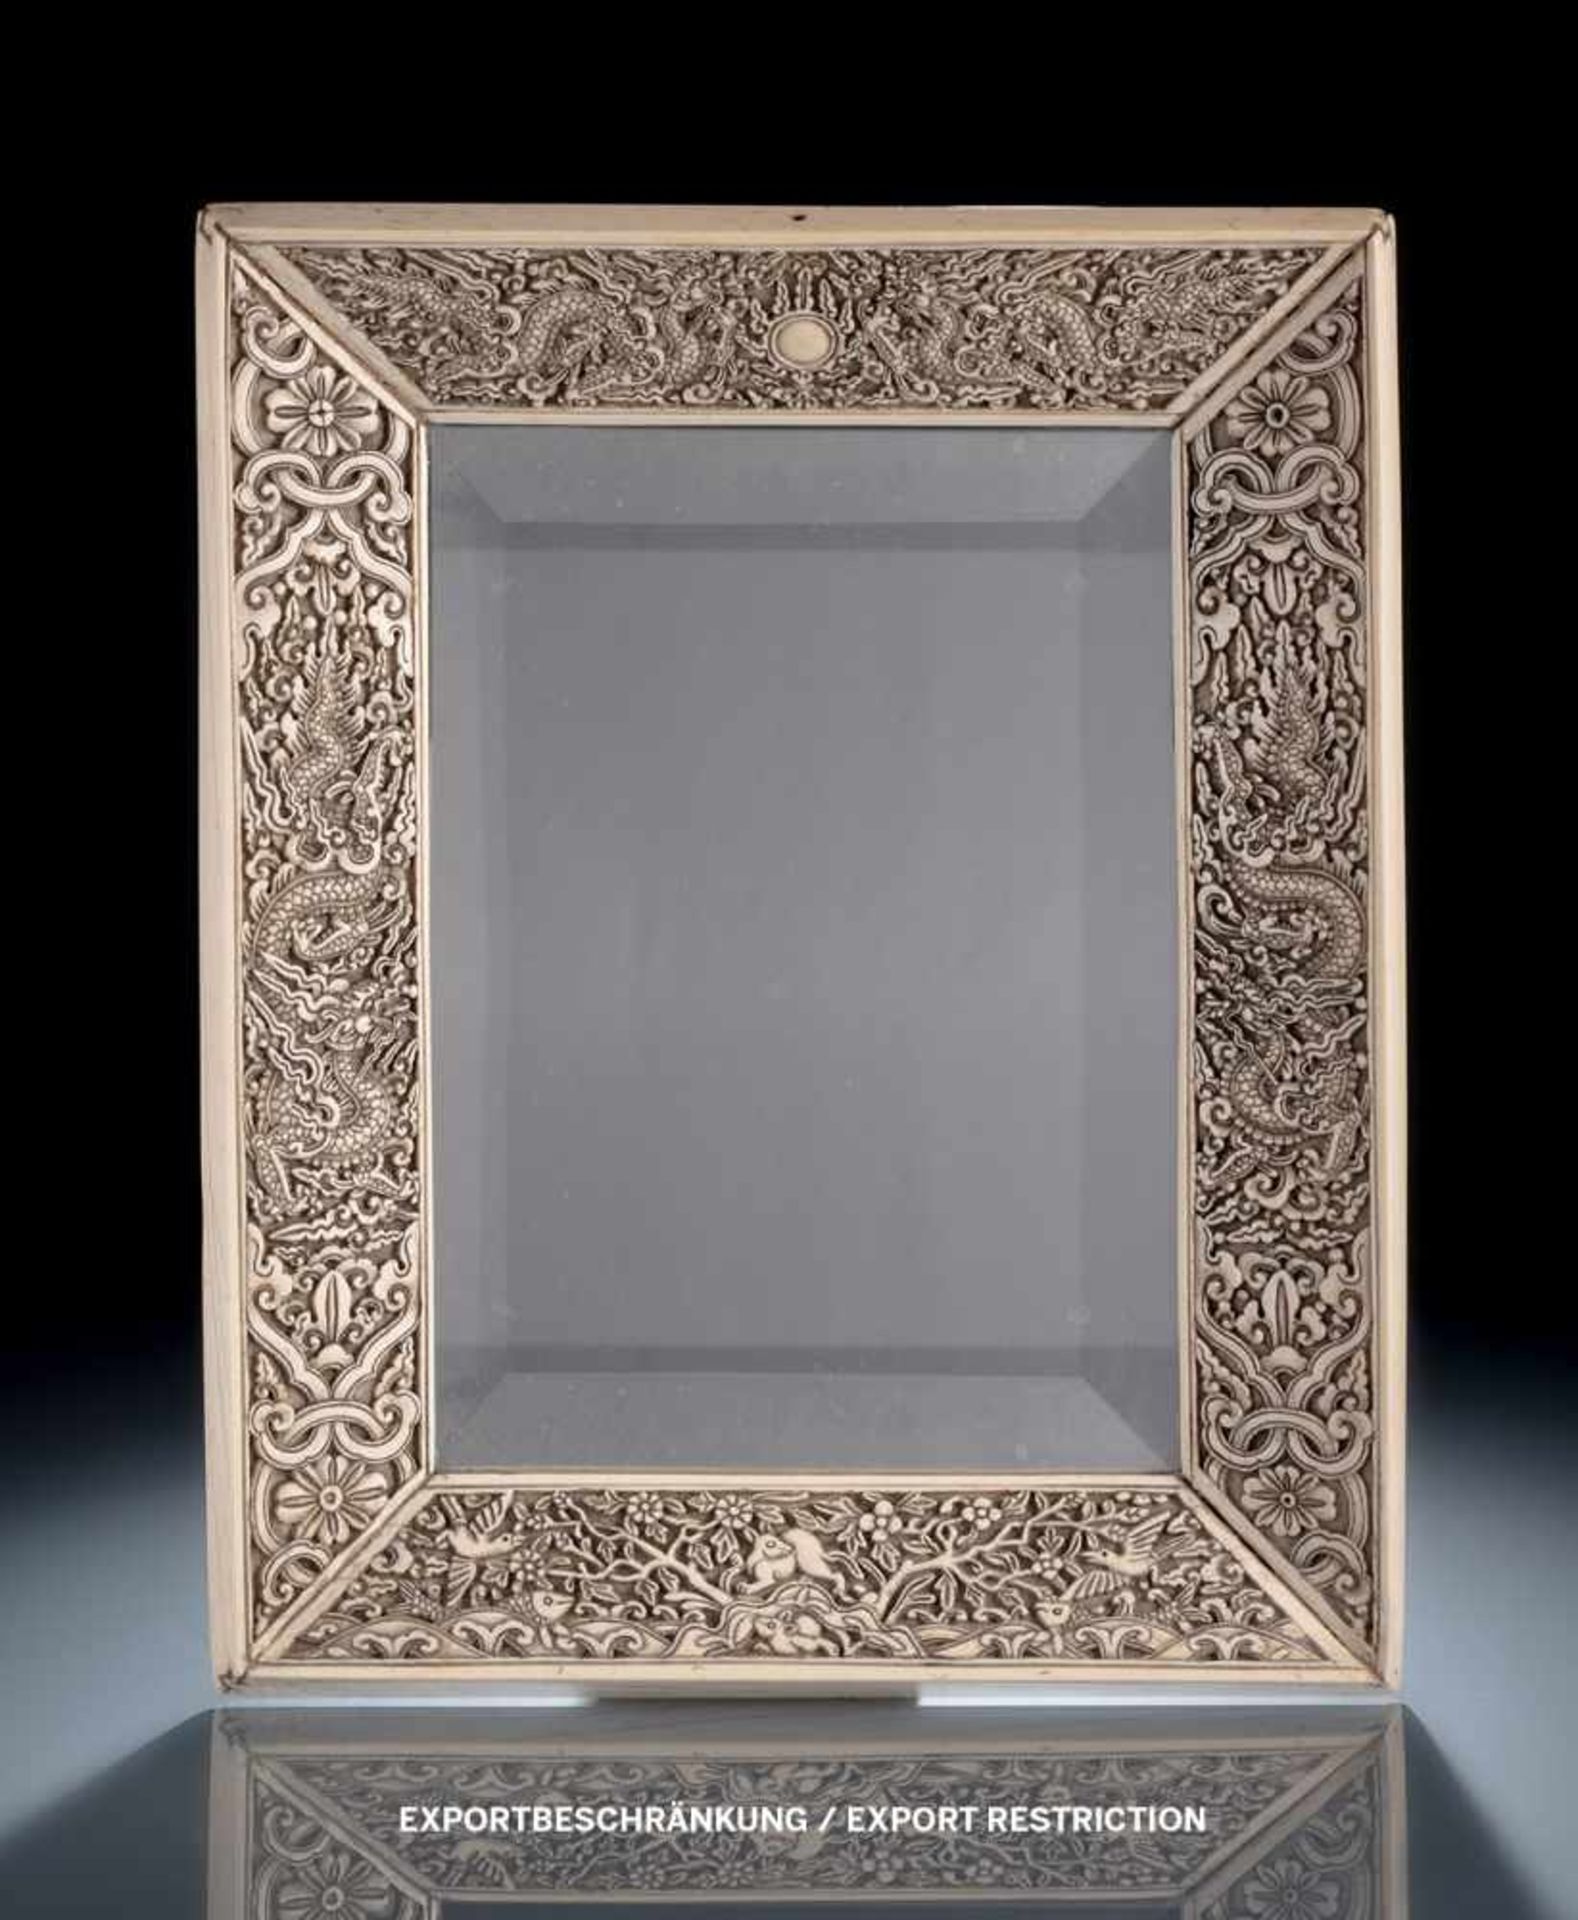 Feiner Rahmen aus Elfenbein mit Drachen-Tier-Dekor, später eingesetzter Spiegel